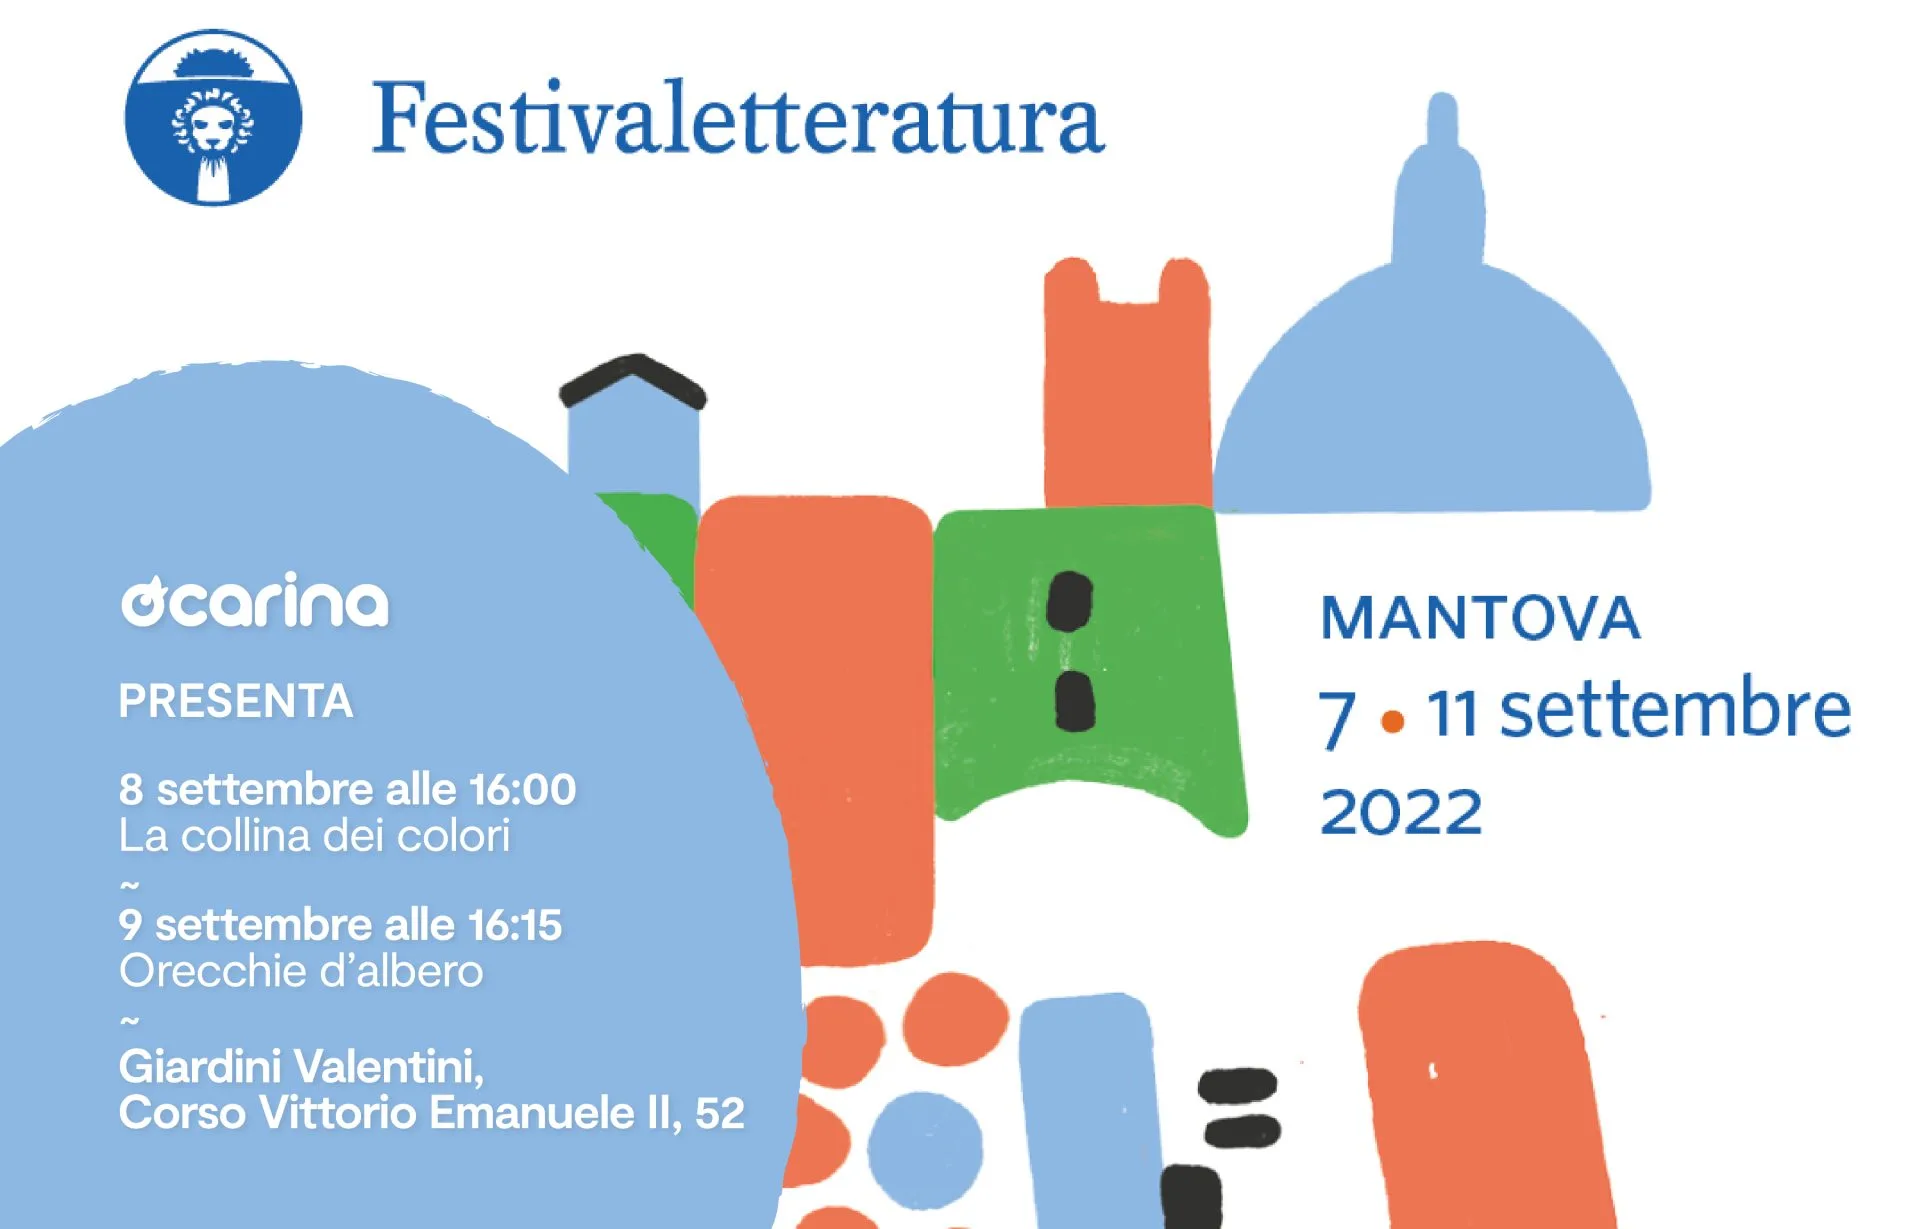 Ocarina at the Festivaletteratura di Mantova